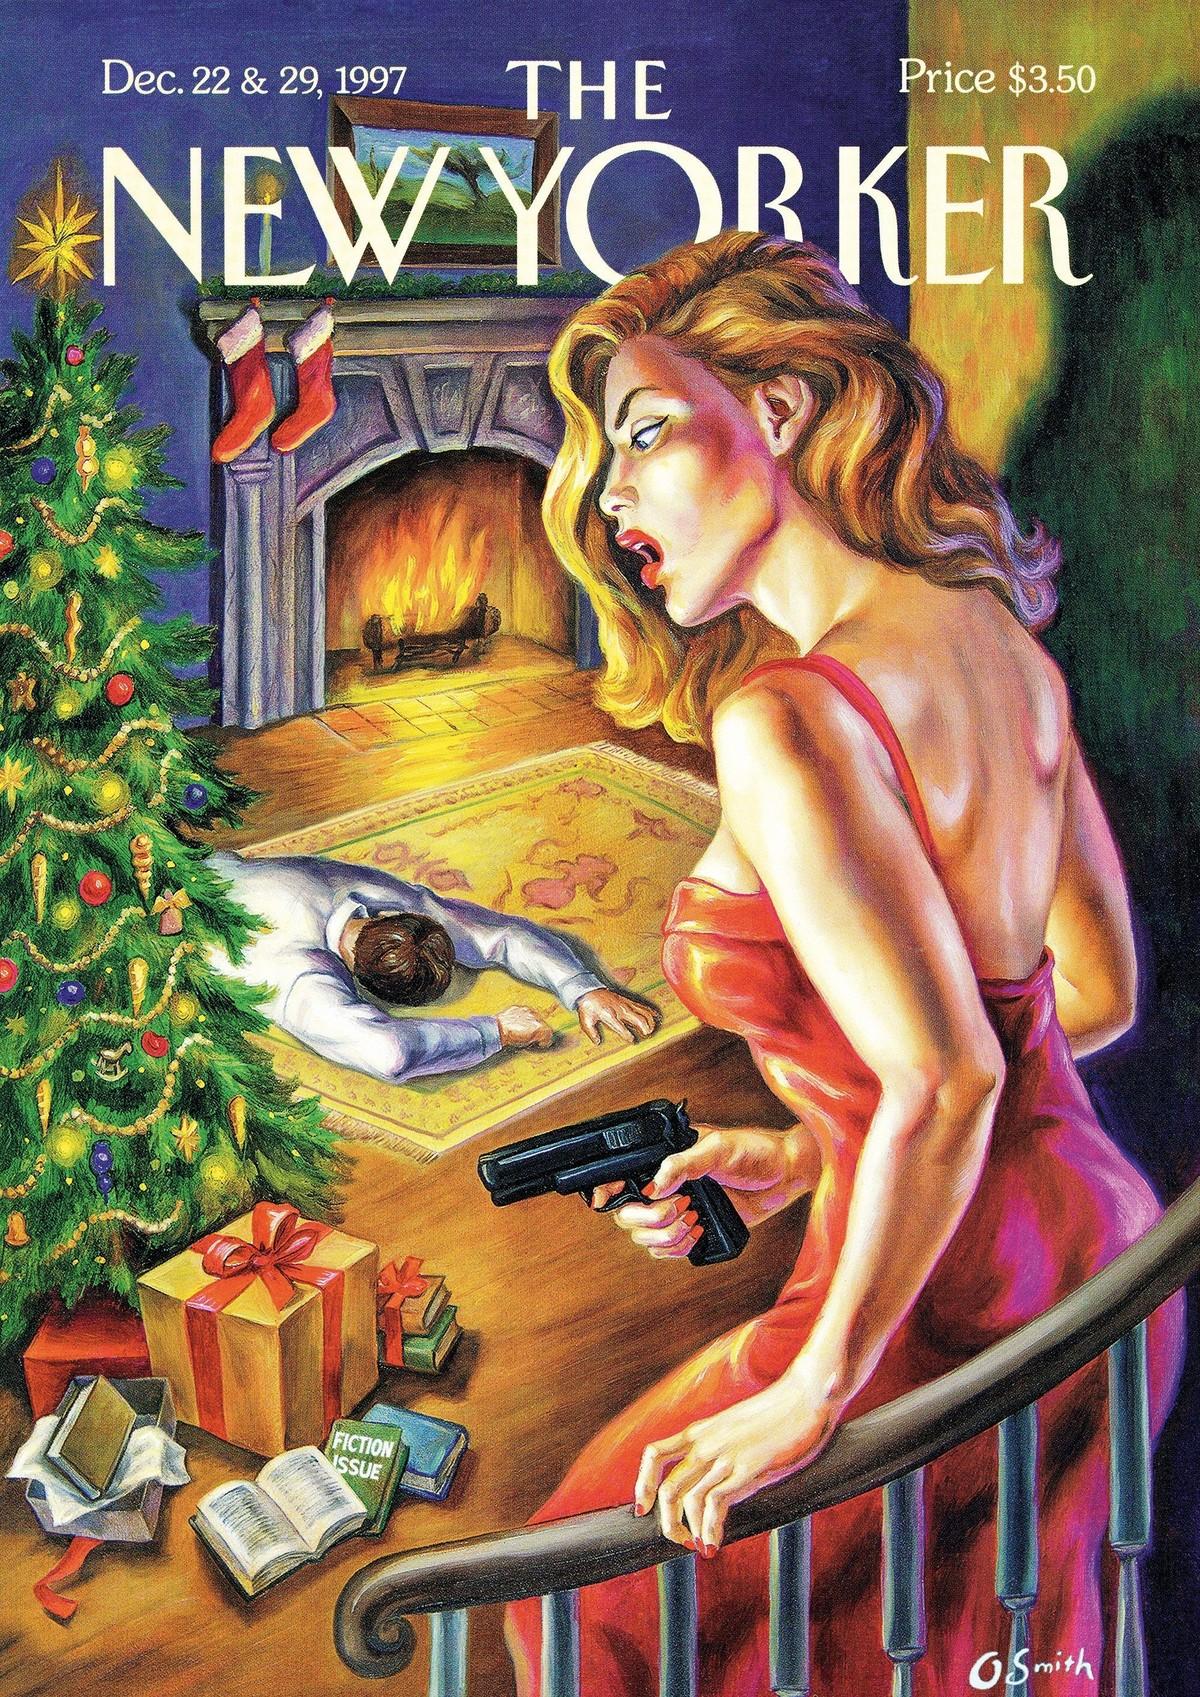 The New Yorker, illustration d'une femme avec un pistolet et d'un homme allongé au sol